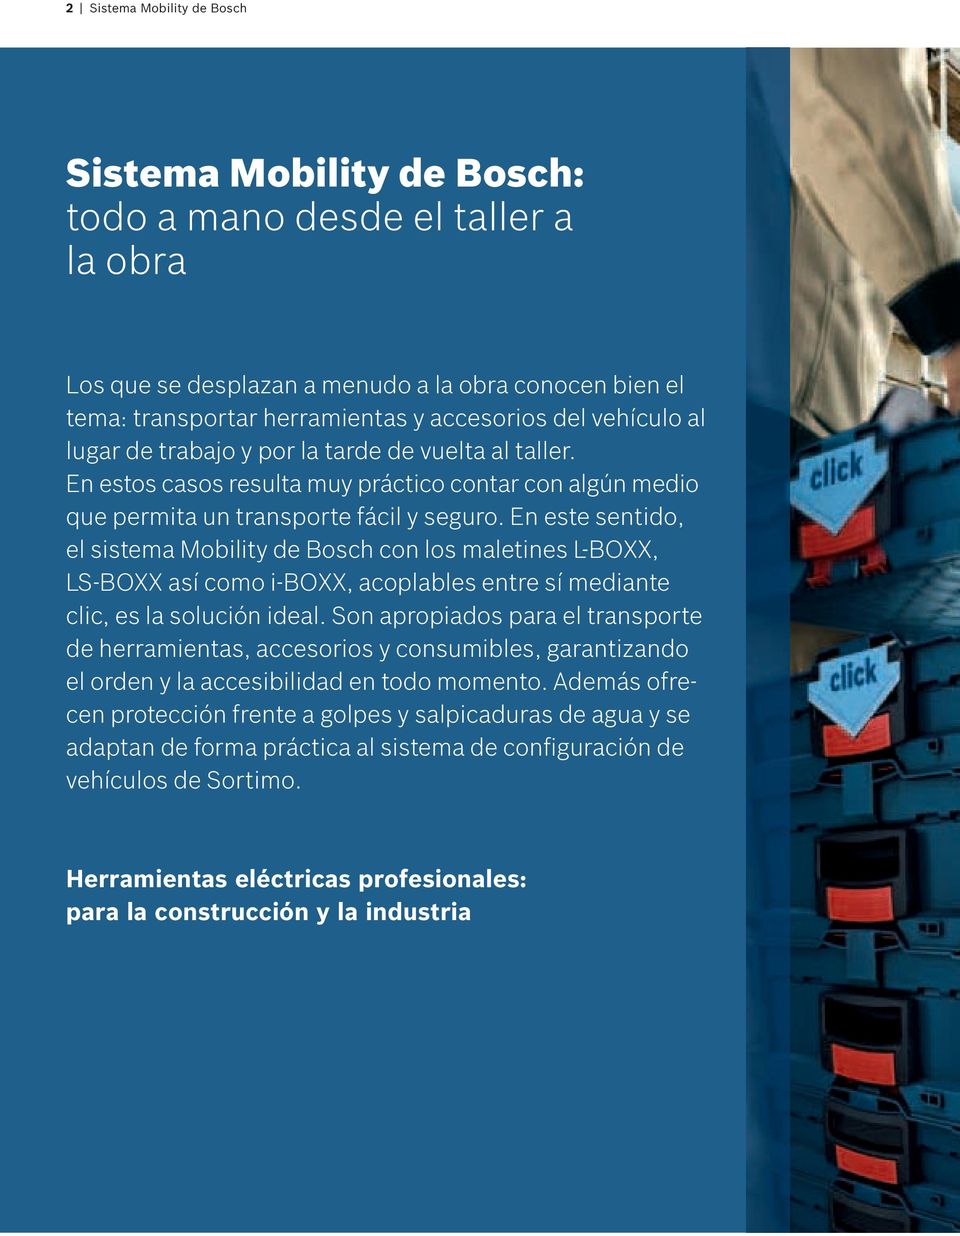 En este sentido, el sistema Mobility de Bosch con los maletines L-BOXX, LS-BOXX así como i-boxx, acoplables entre sí mediante clic, es la solución ideal.